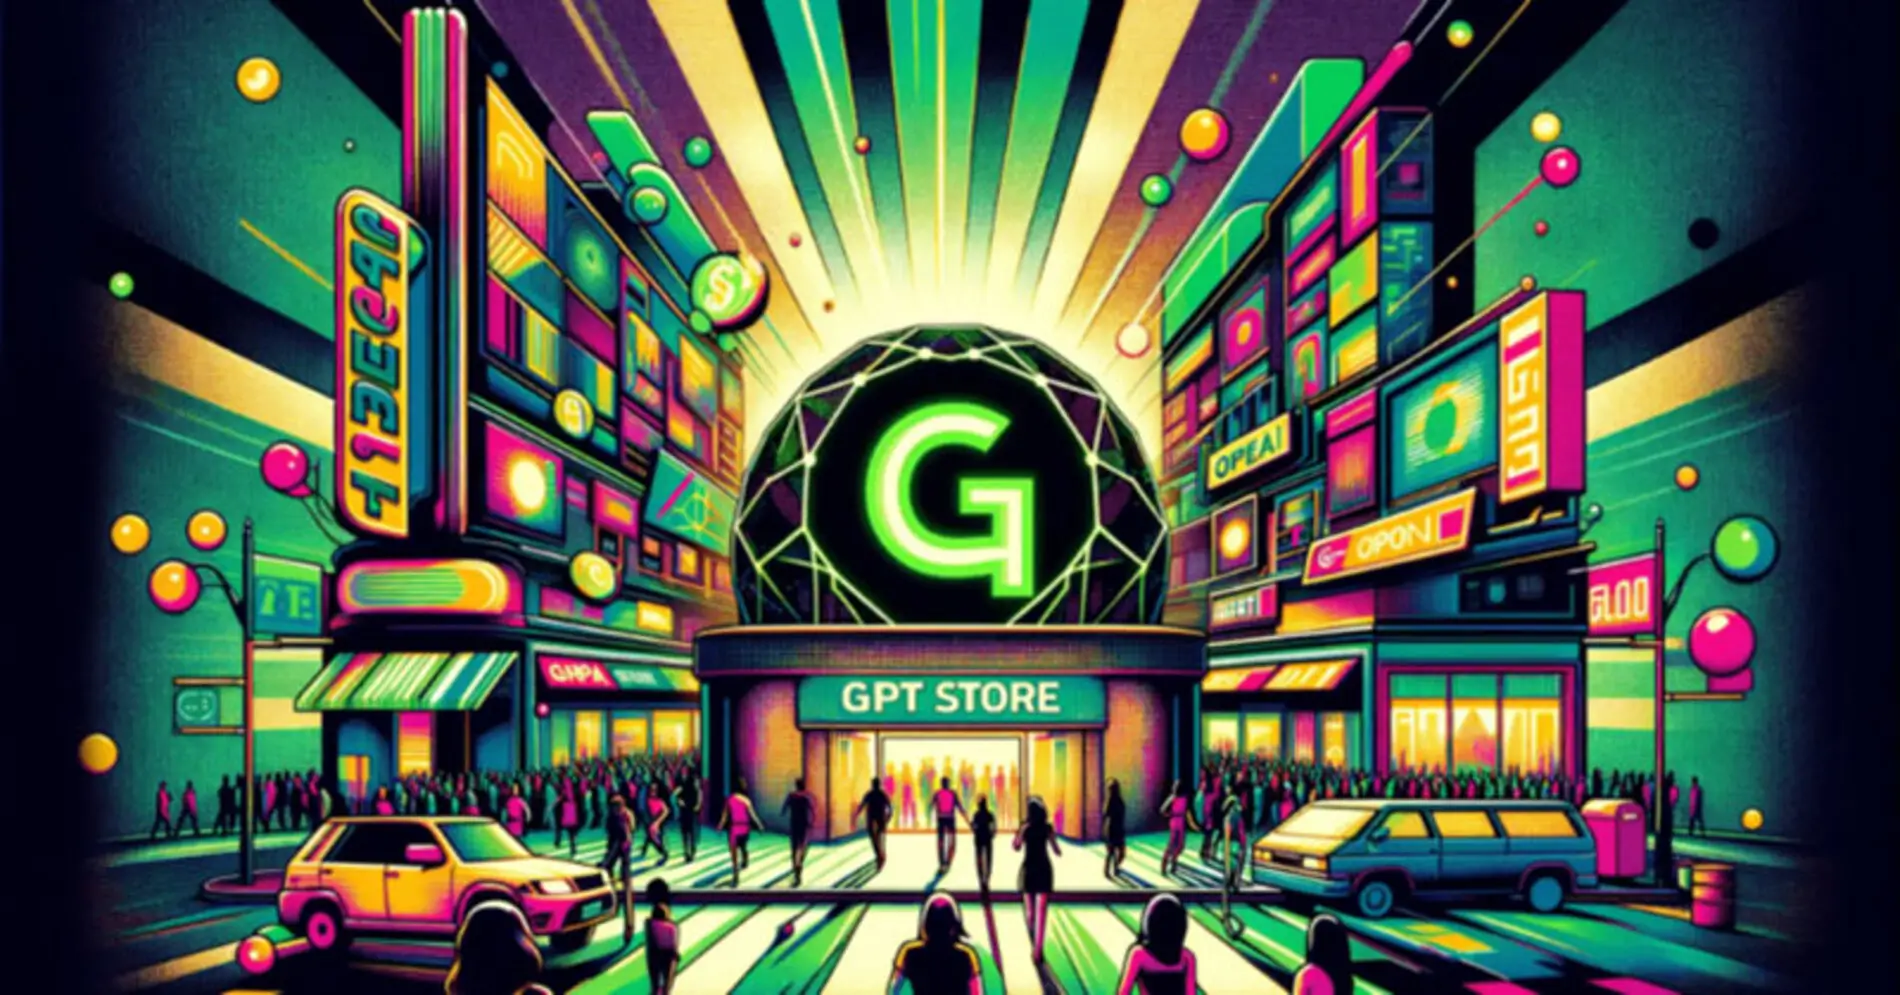 GPT Store викликає хвилю обурення через потенційні порушення авторських прав